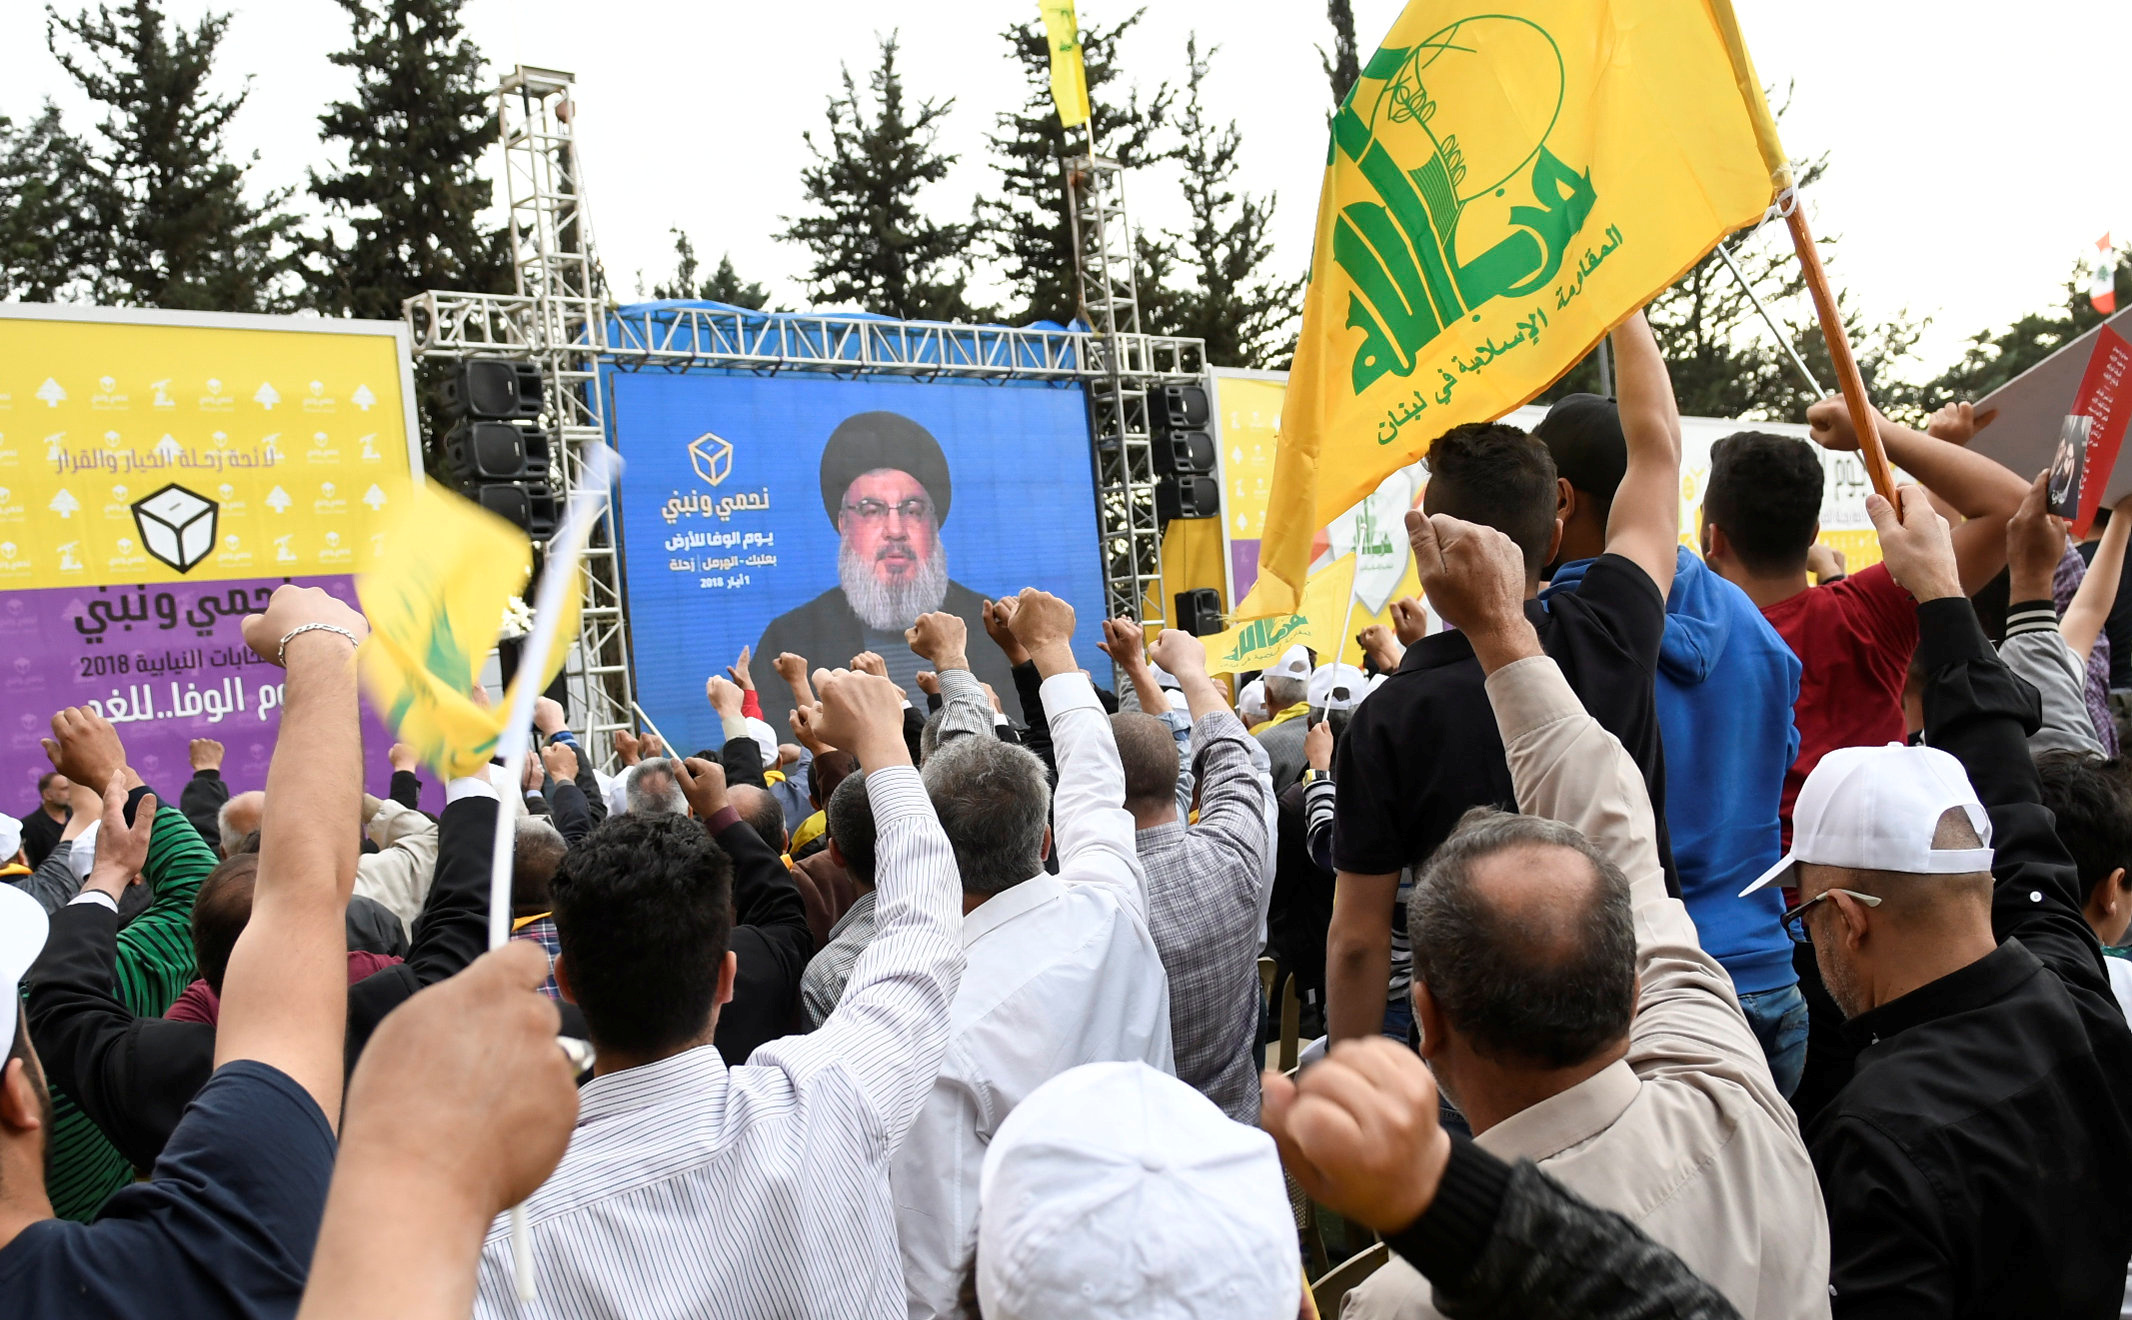 انتخابات لبنان..خسارة حزب الله وحلفاءه قد تعقّد المشهد وتنذر بشلل سياسي طويل